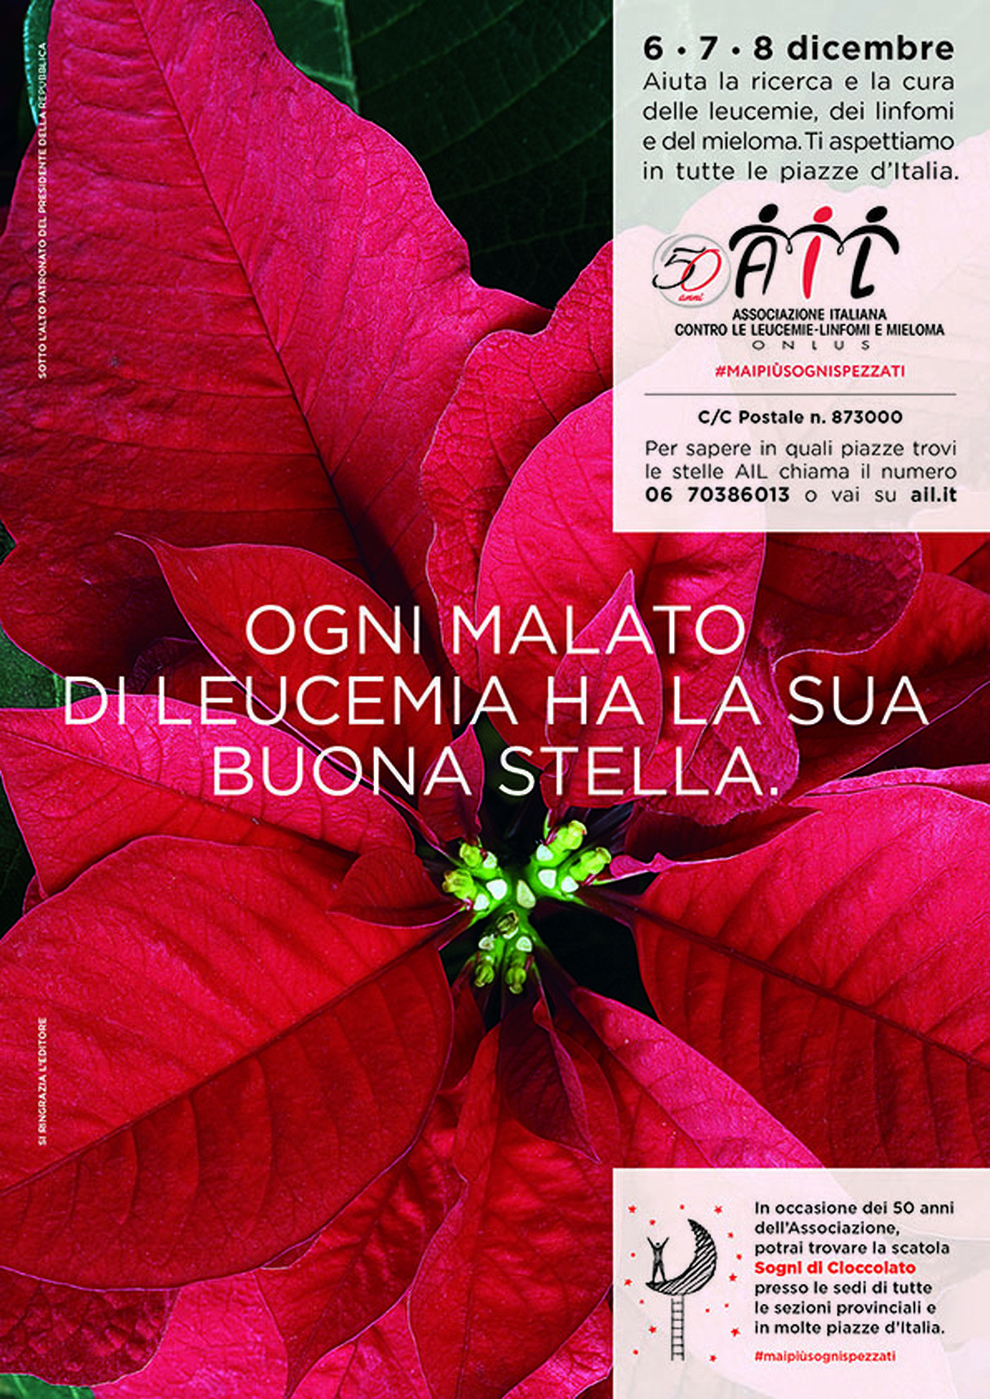 Immagini Di Natale Stelle.Stelle Di Natale Ail Torna Il Tradizionale Appuntamento In 4 800 Piazze Italiane 6 7 8 Dicembre